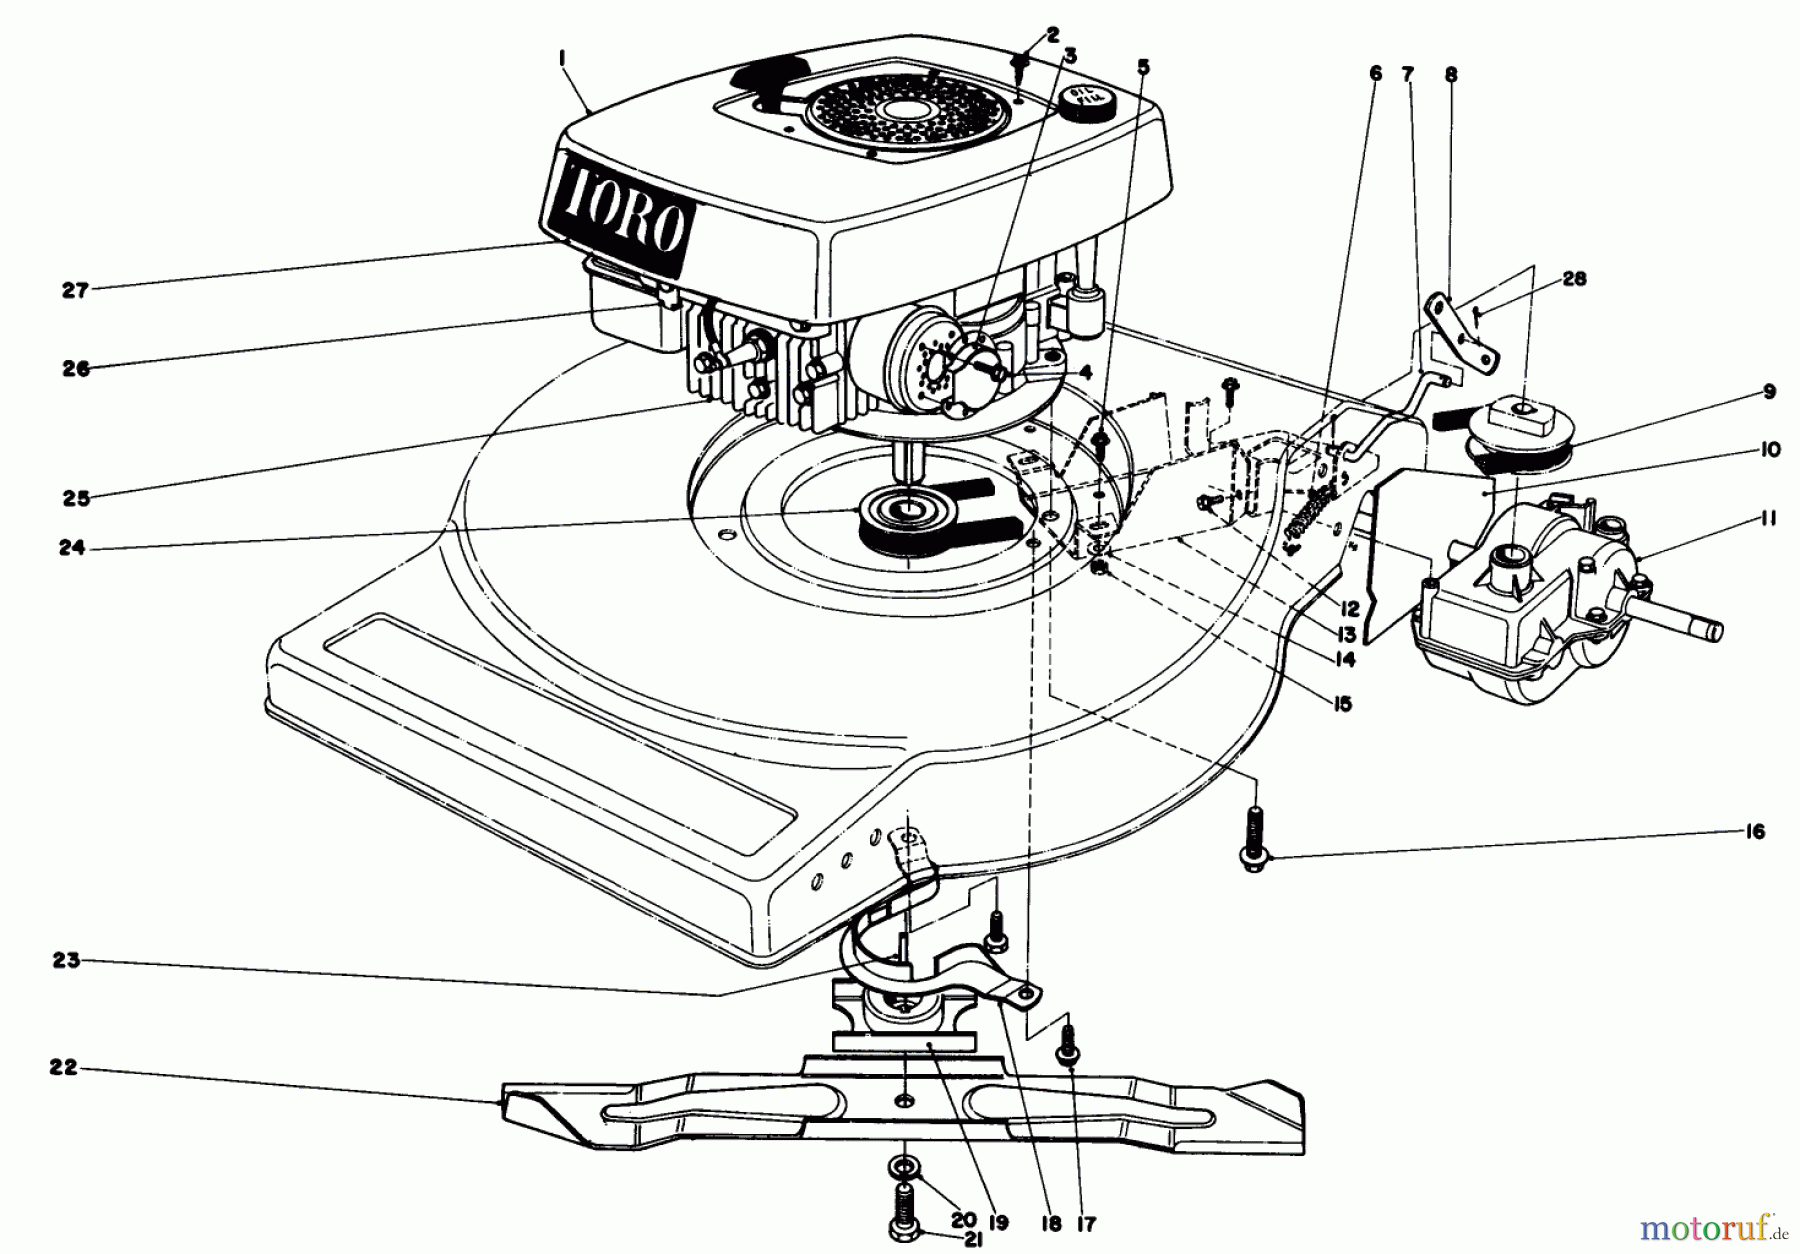  Toro Neu Mowers, Walk-Behind Seite 1 16890 - Toro Lawnmower, 1980 (0000001-0999999) ENGINE ASSEMBLY (MODEL NO. 16890)